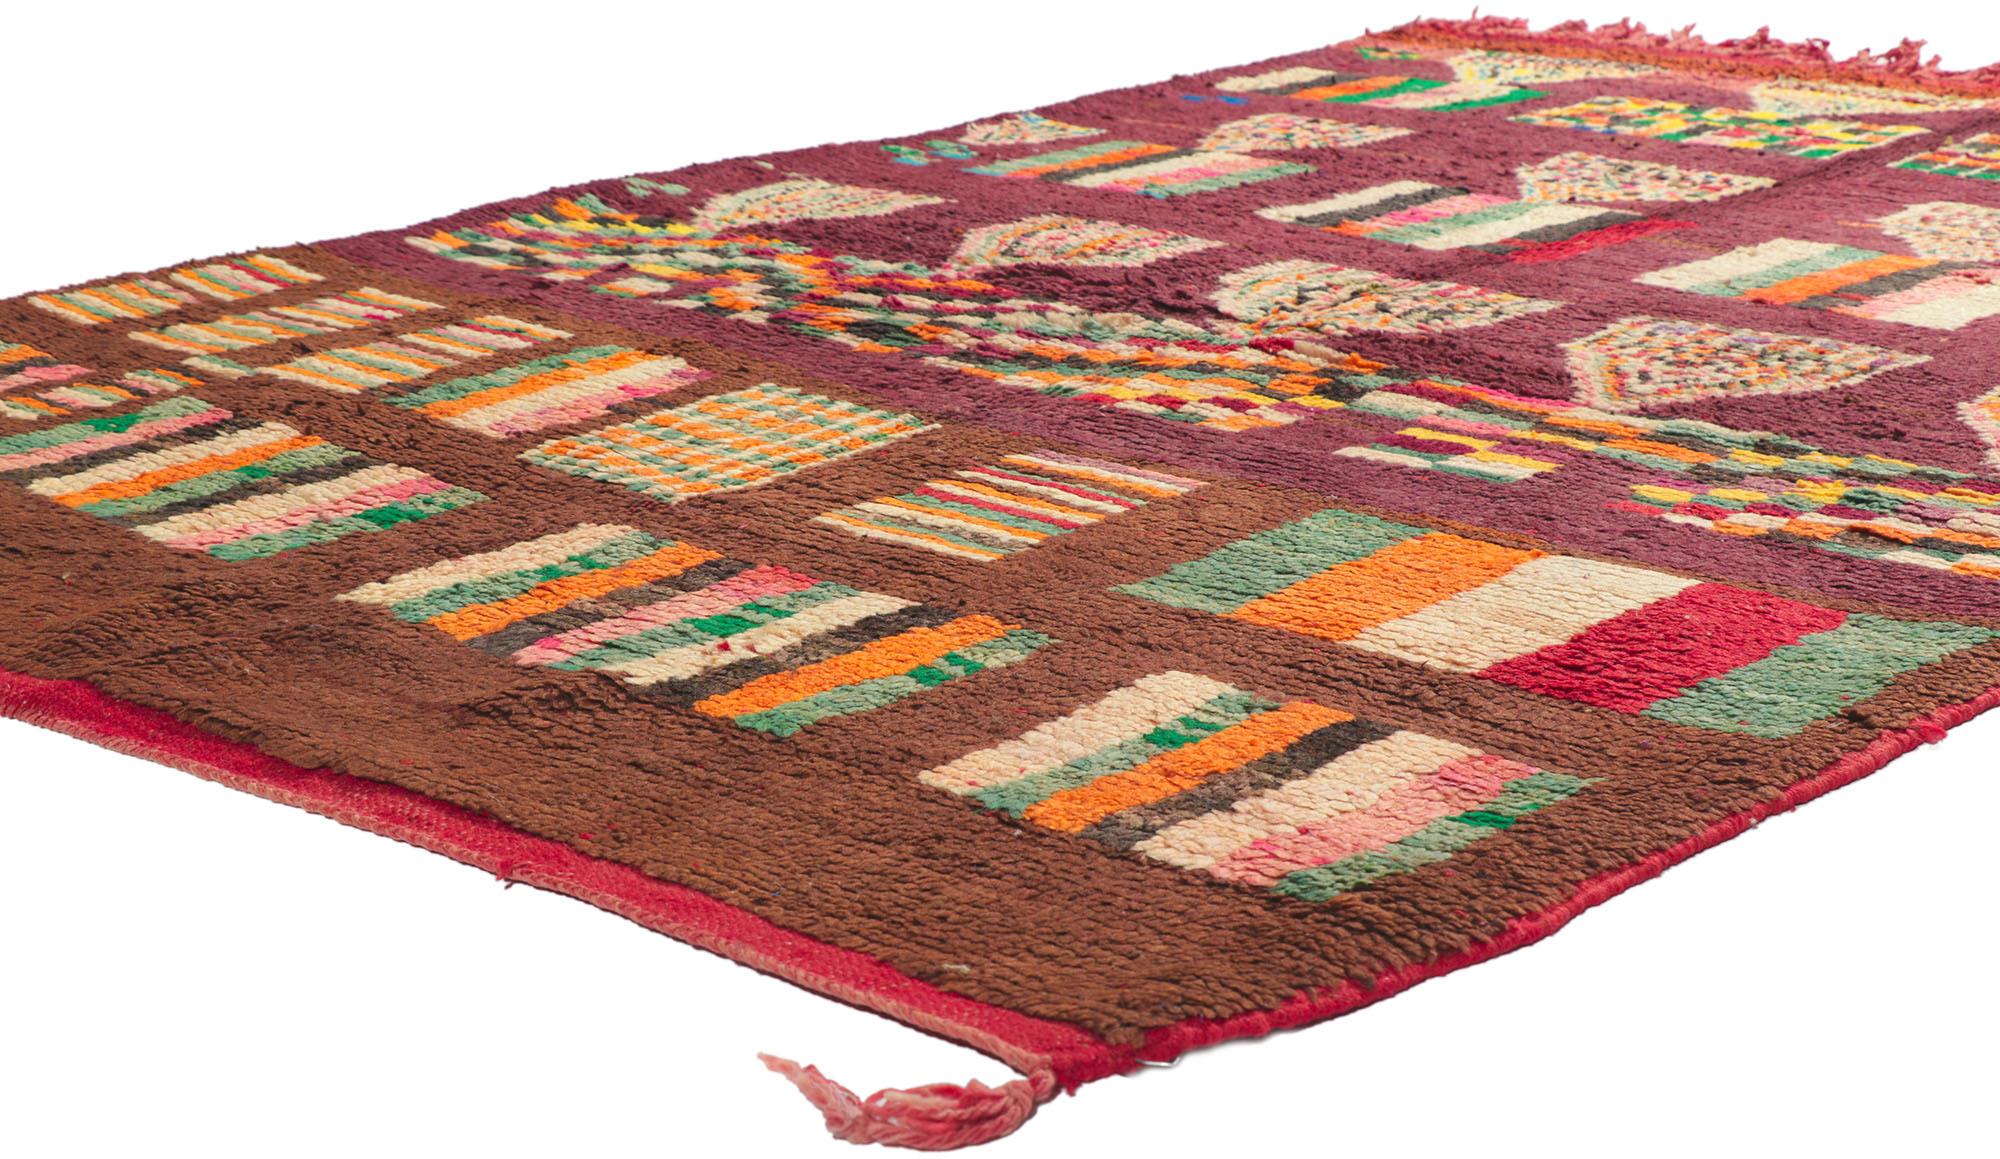 20309 Vintage Boujad Marokkanischer Teppich mit Bauhaus-Stil, 05'03 x 07'06. Die aus der marokkanischen Region Boujad stammenden Boujad-Teppiche sind mehr als nur Bodenbeläge; sie sind exquisite handgewebte Meisterwerke, die das lebendige